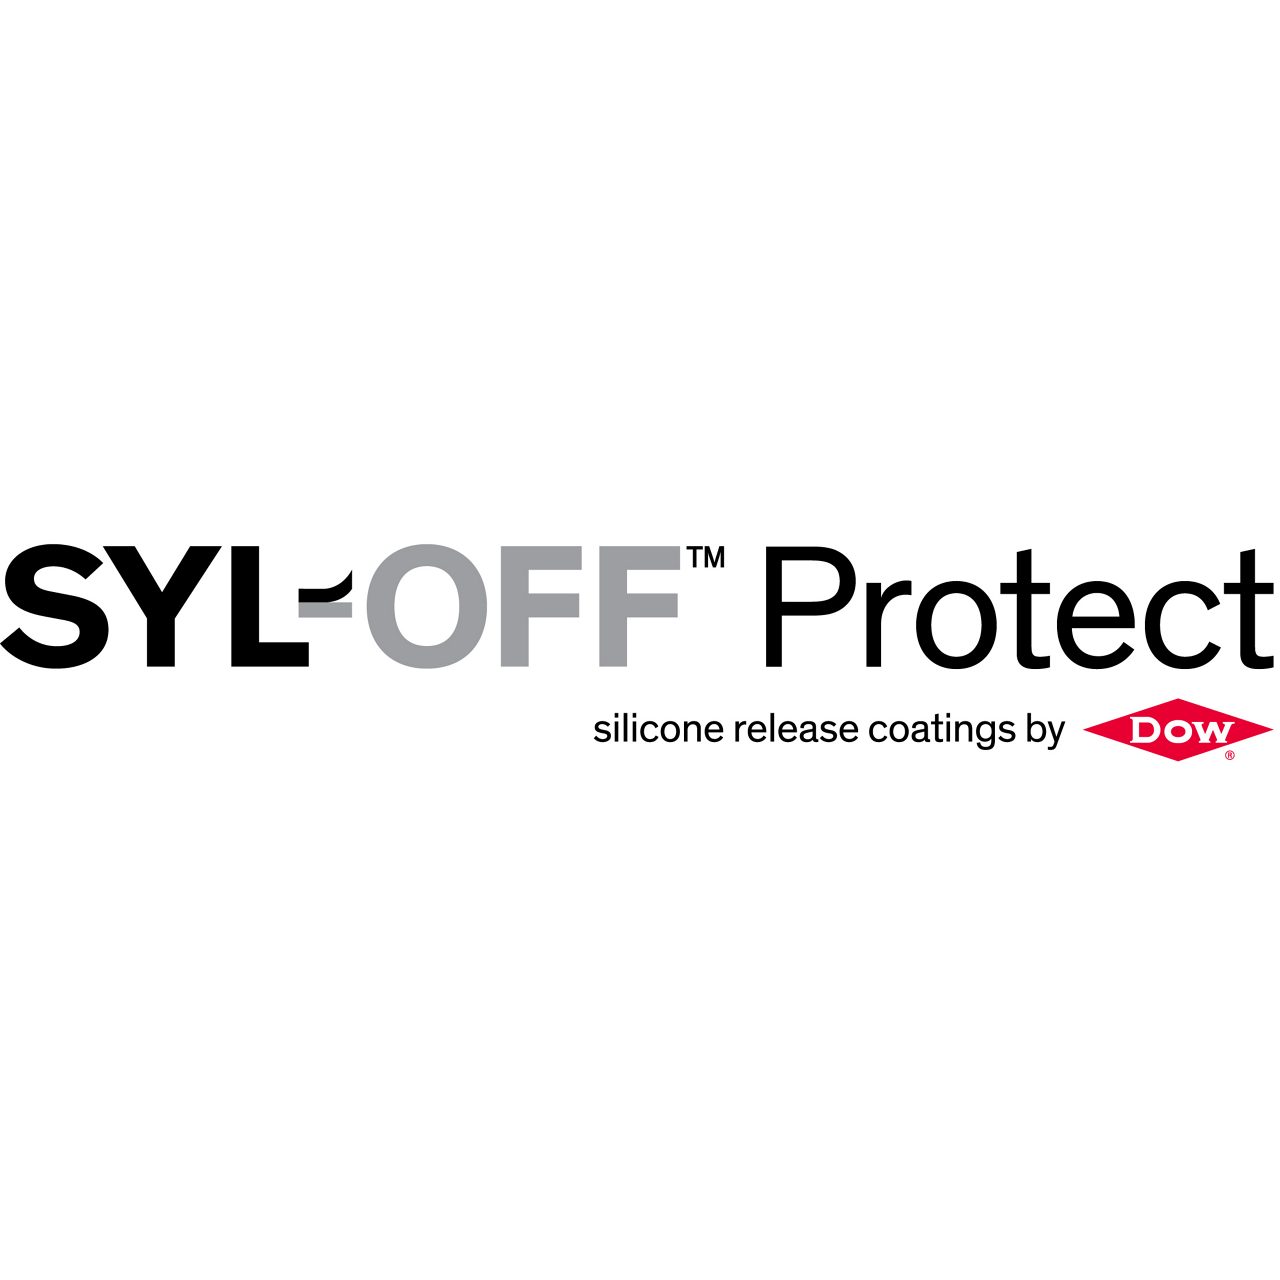 SYL-OFF™ 保护 标志